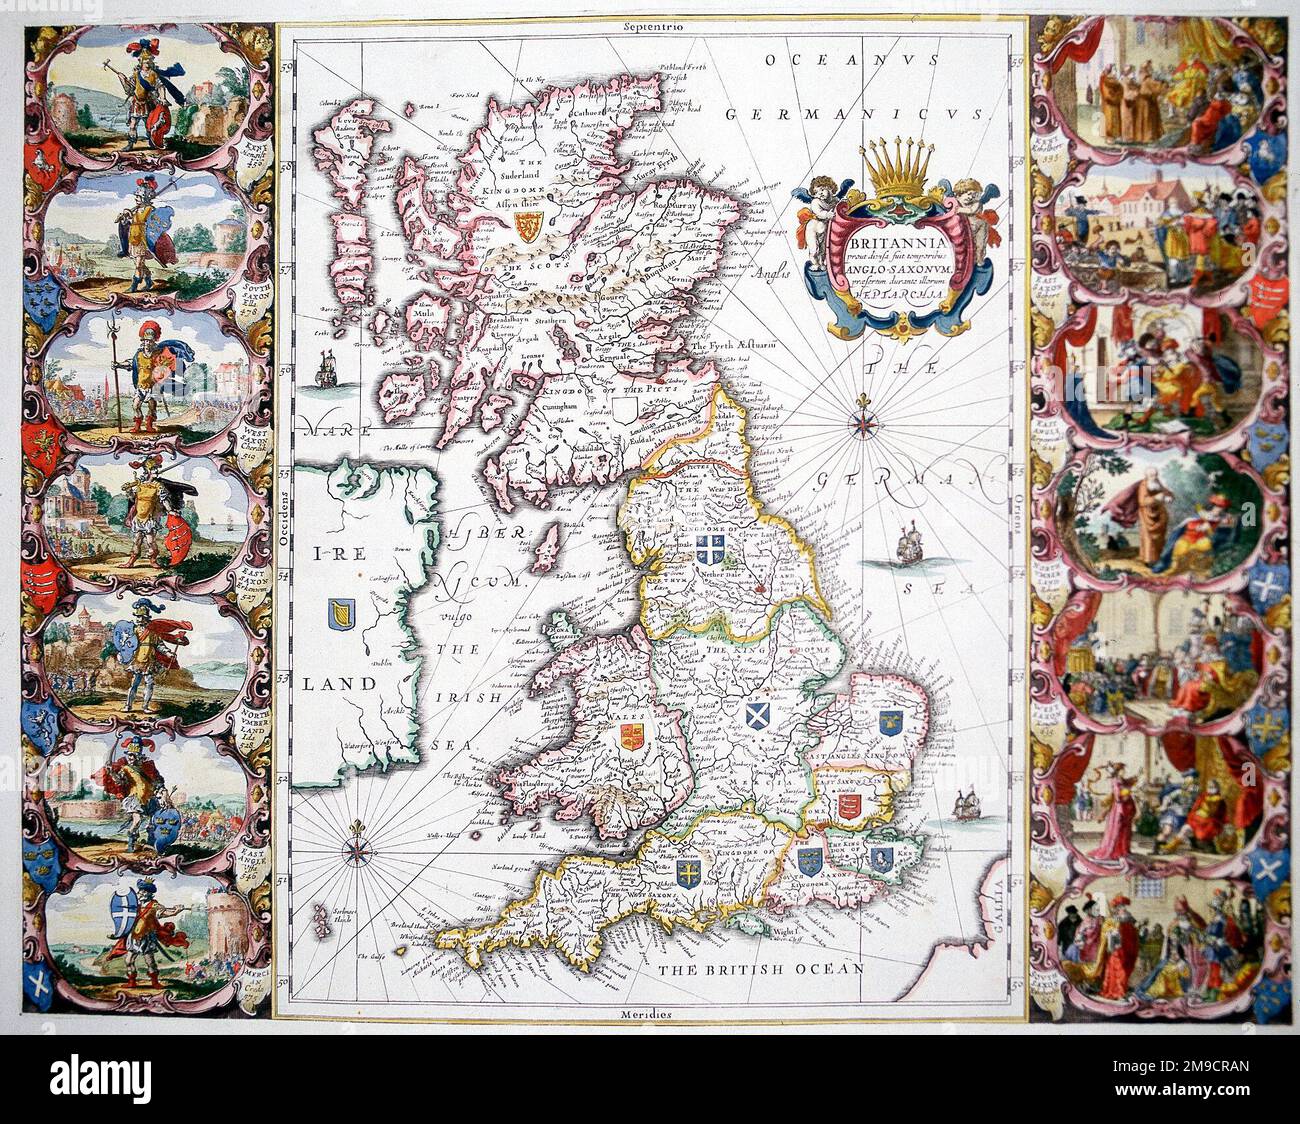 Mapa de la Heptarquía, Reinos anglosajones de Gran Bretaña de la Edad Media Temprana, Northumbria, Mercia, Anglia Oriental, Essex, Kent, Sussex y Wessex. Foto de stock